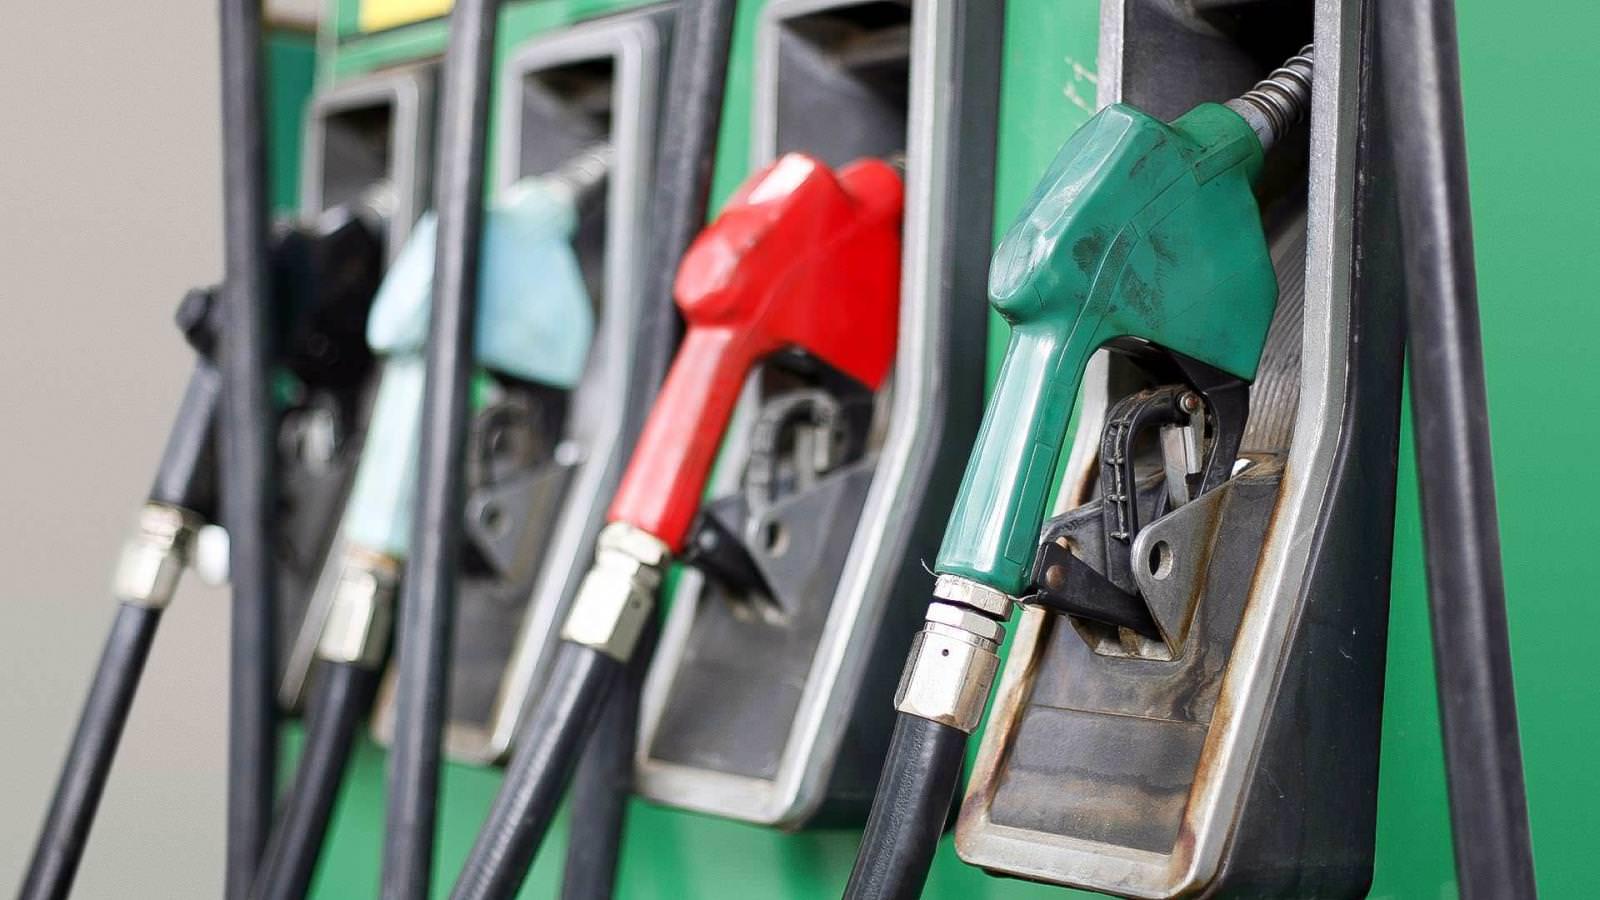 S-a votat! Supraacciza la carburanți  a fost eliminată! Prețul benzinei și motorinei va scădea de la începutul anului 2020